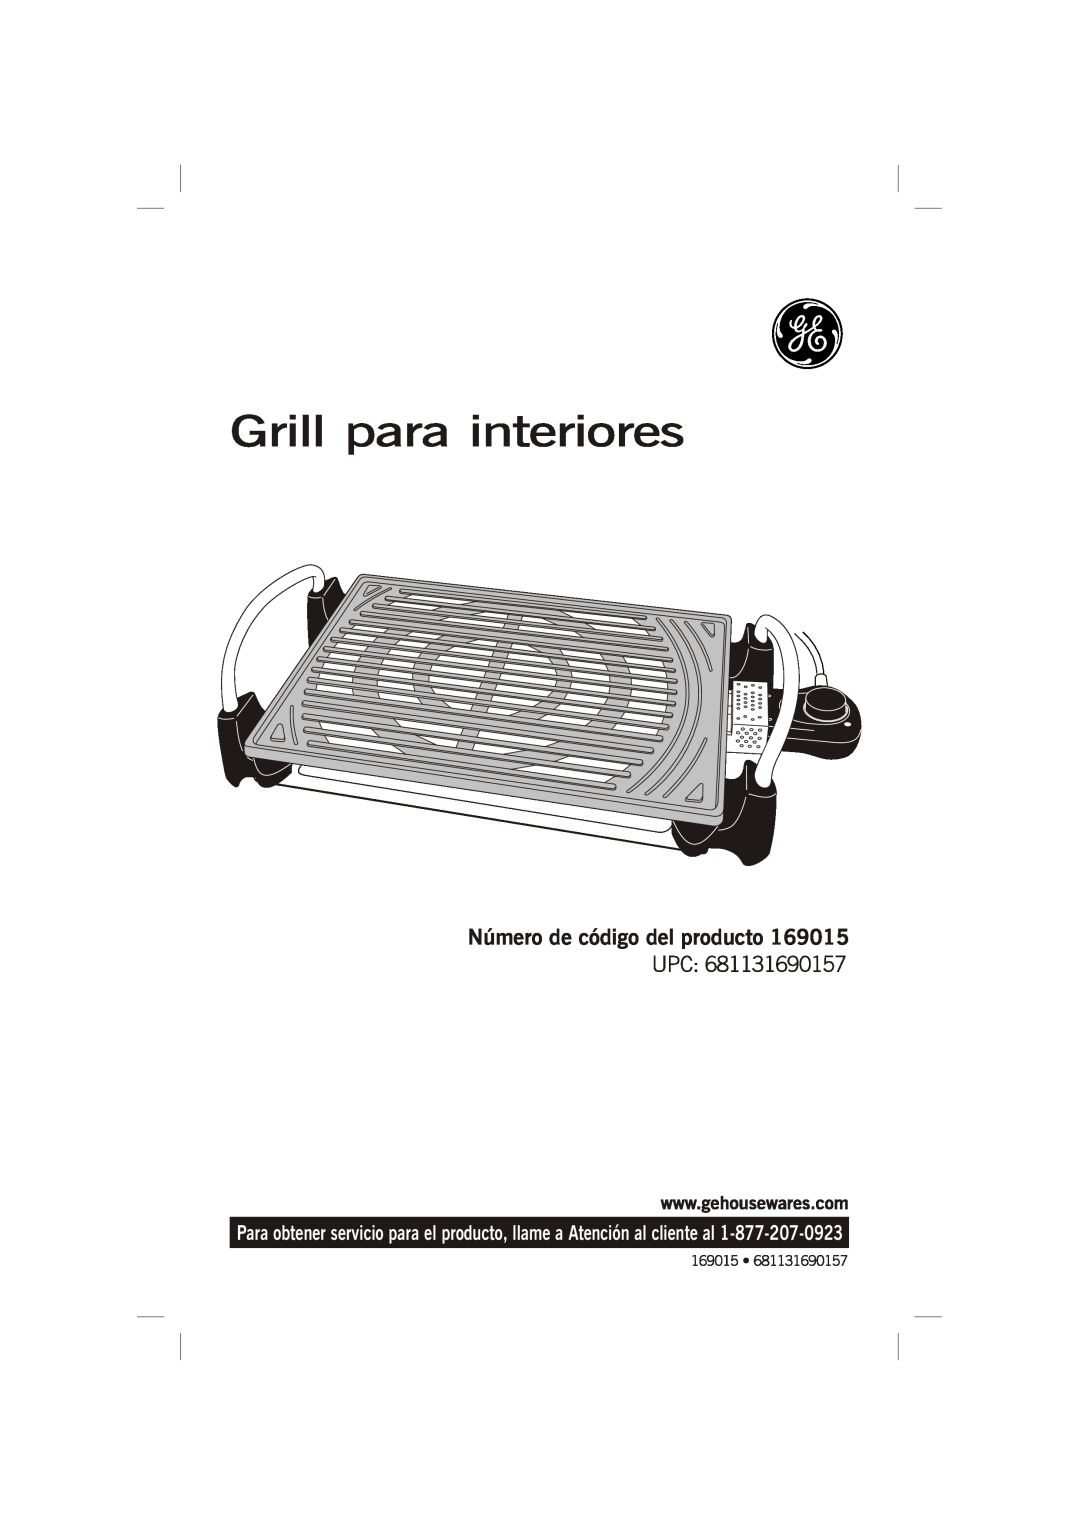 GE 681131690157 manual Grill para interiores, Número de código del producto 